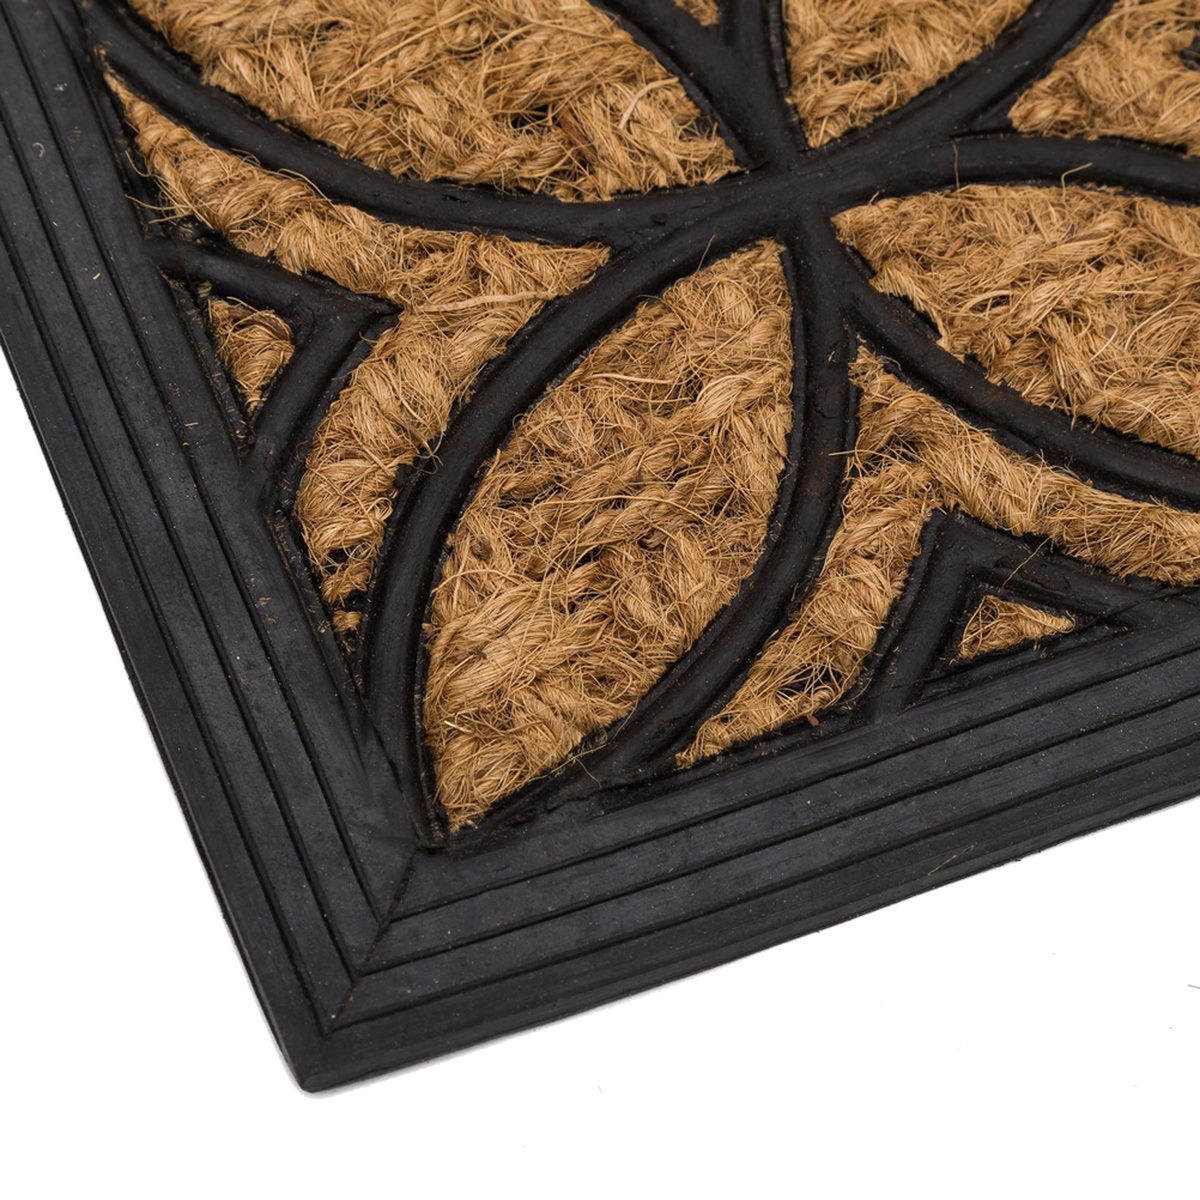 Coconut fibers Doormat - PANAMA - 60 cm